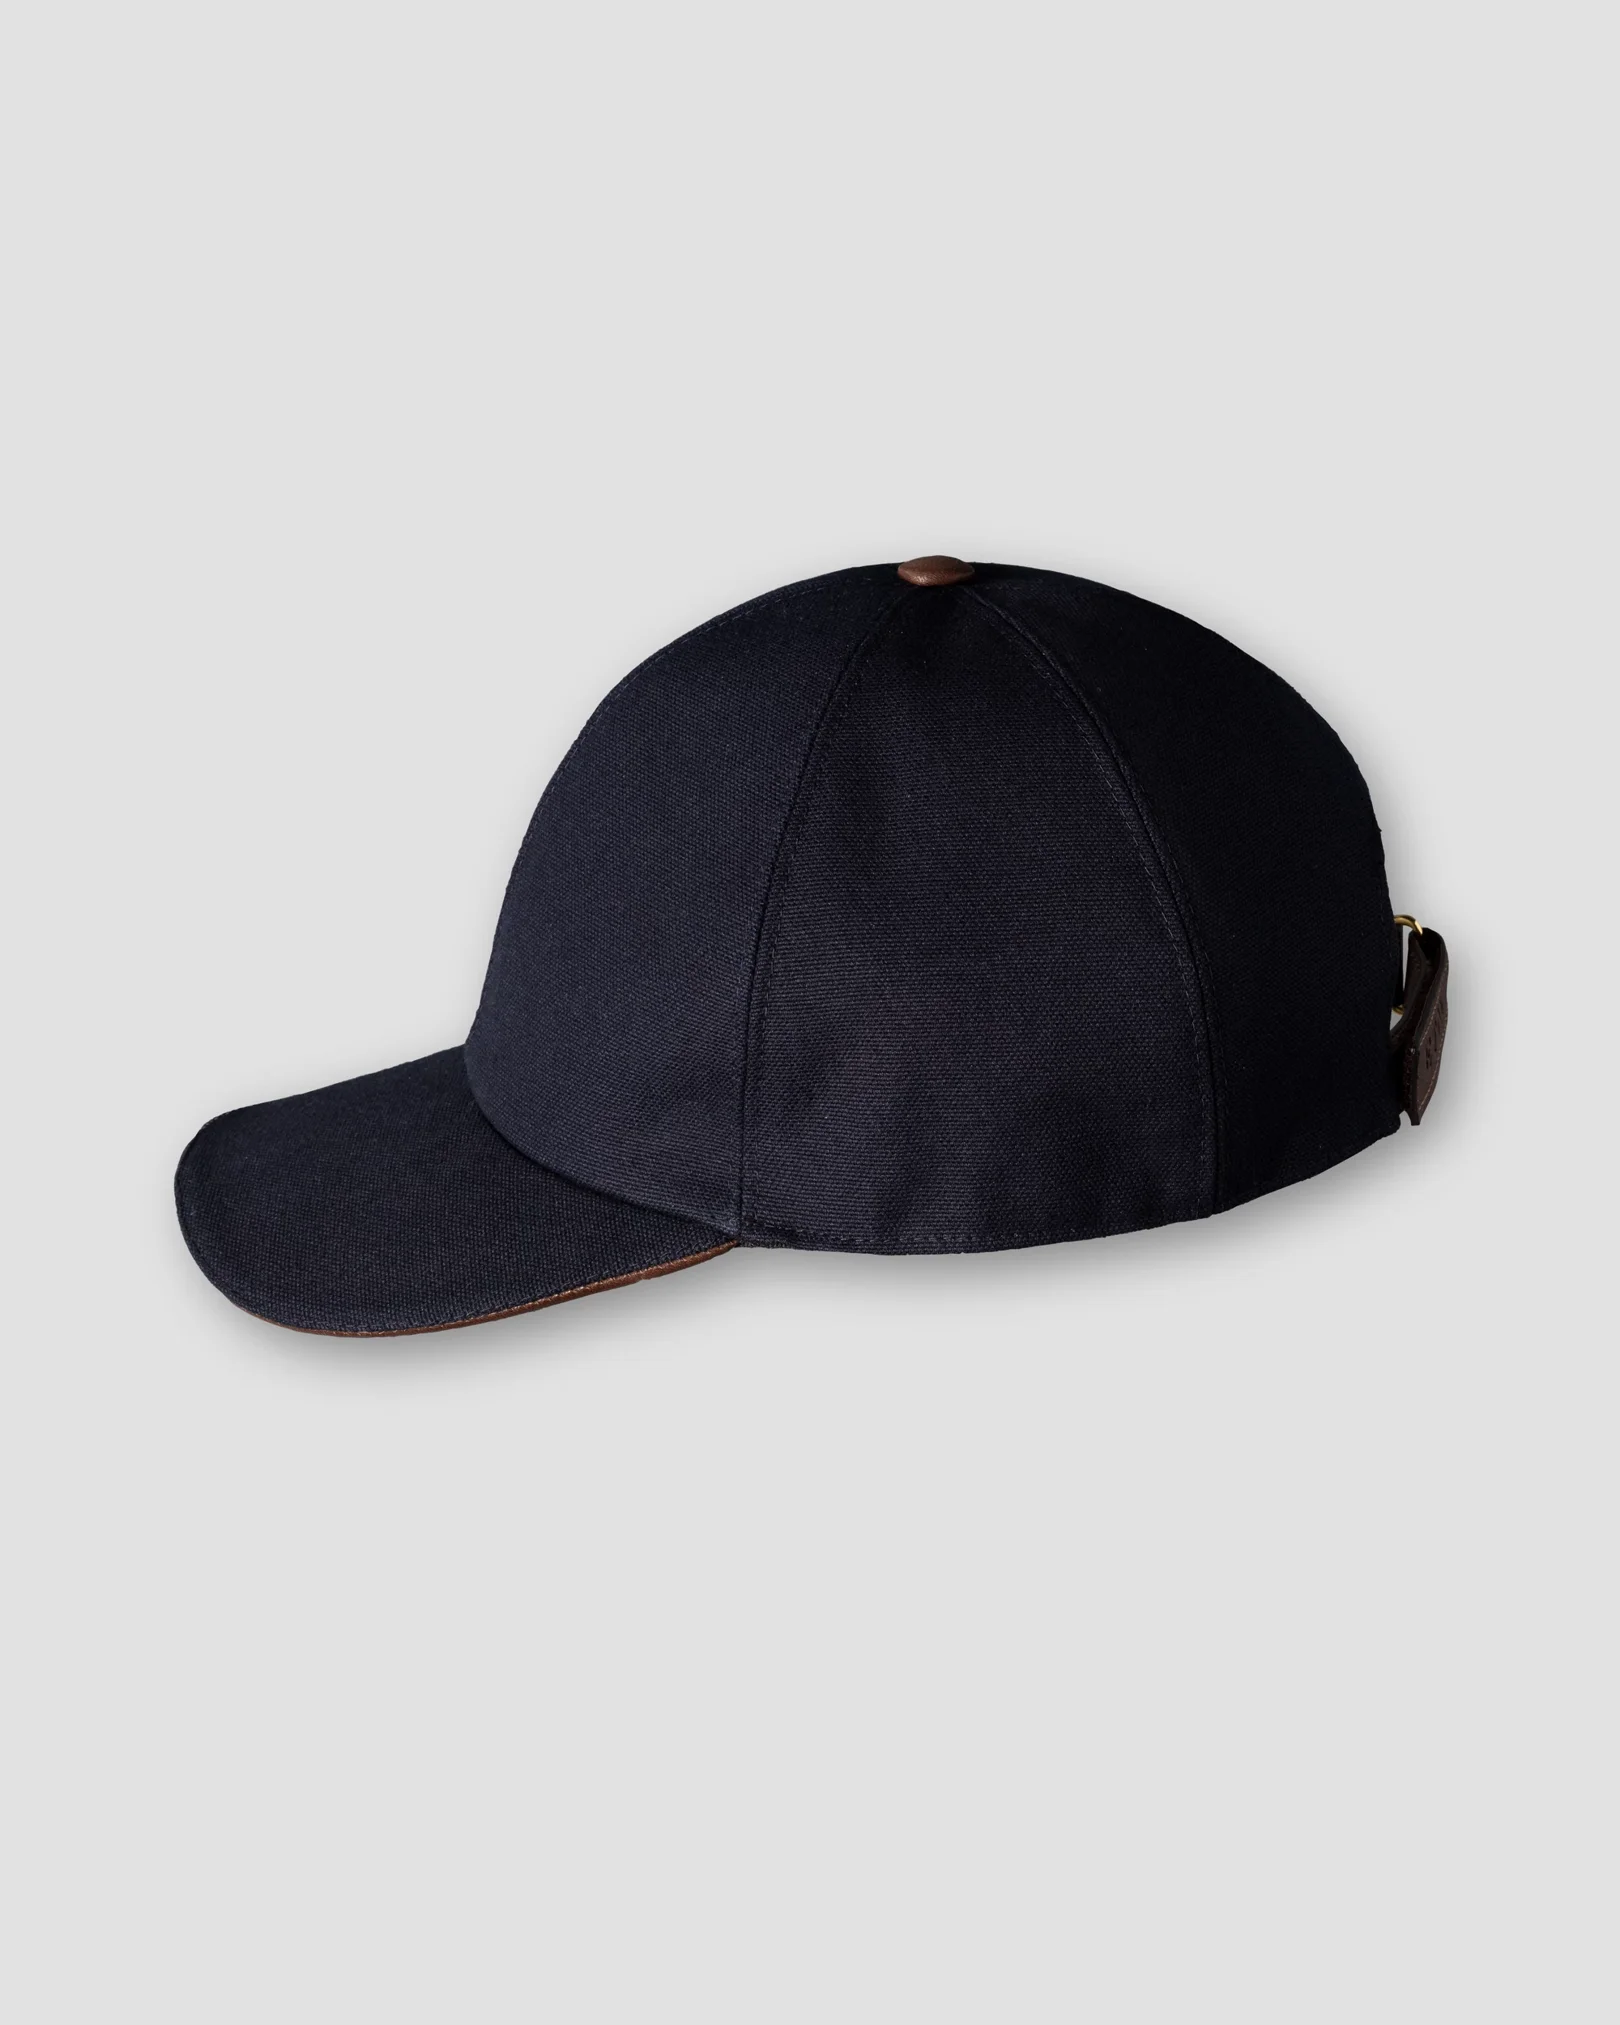 Eton - dark blue baseball cap